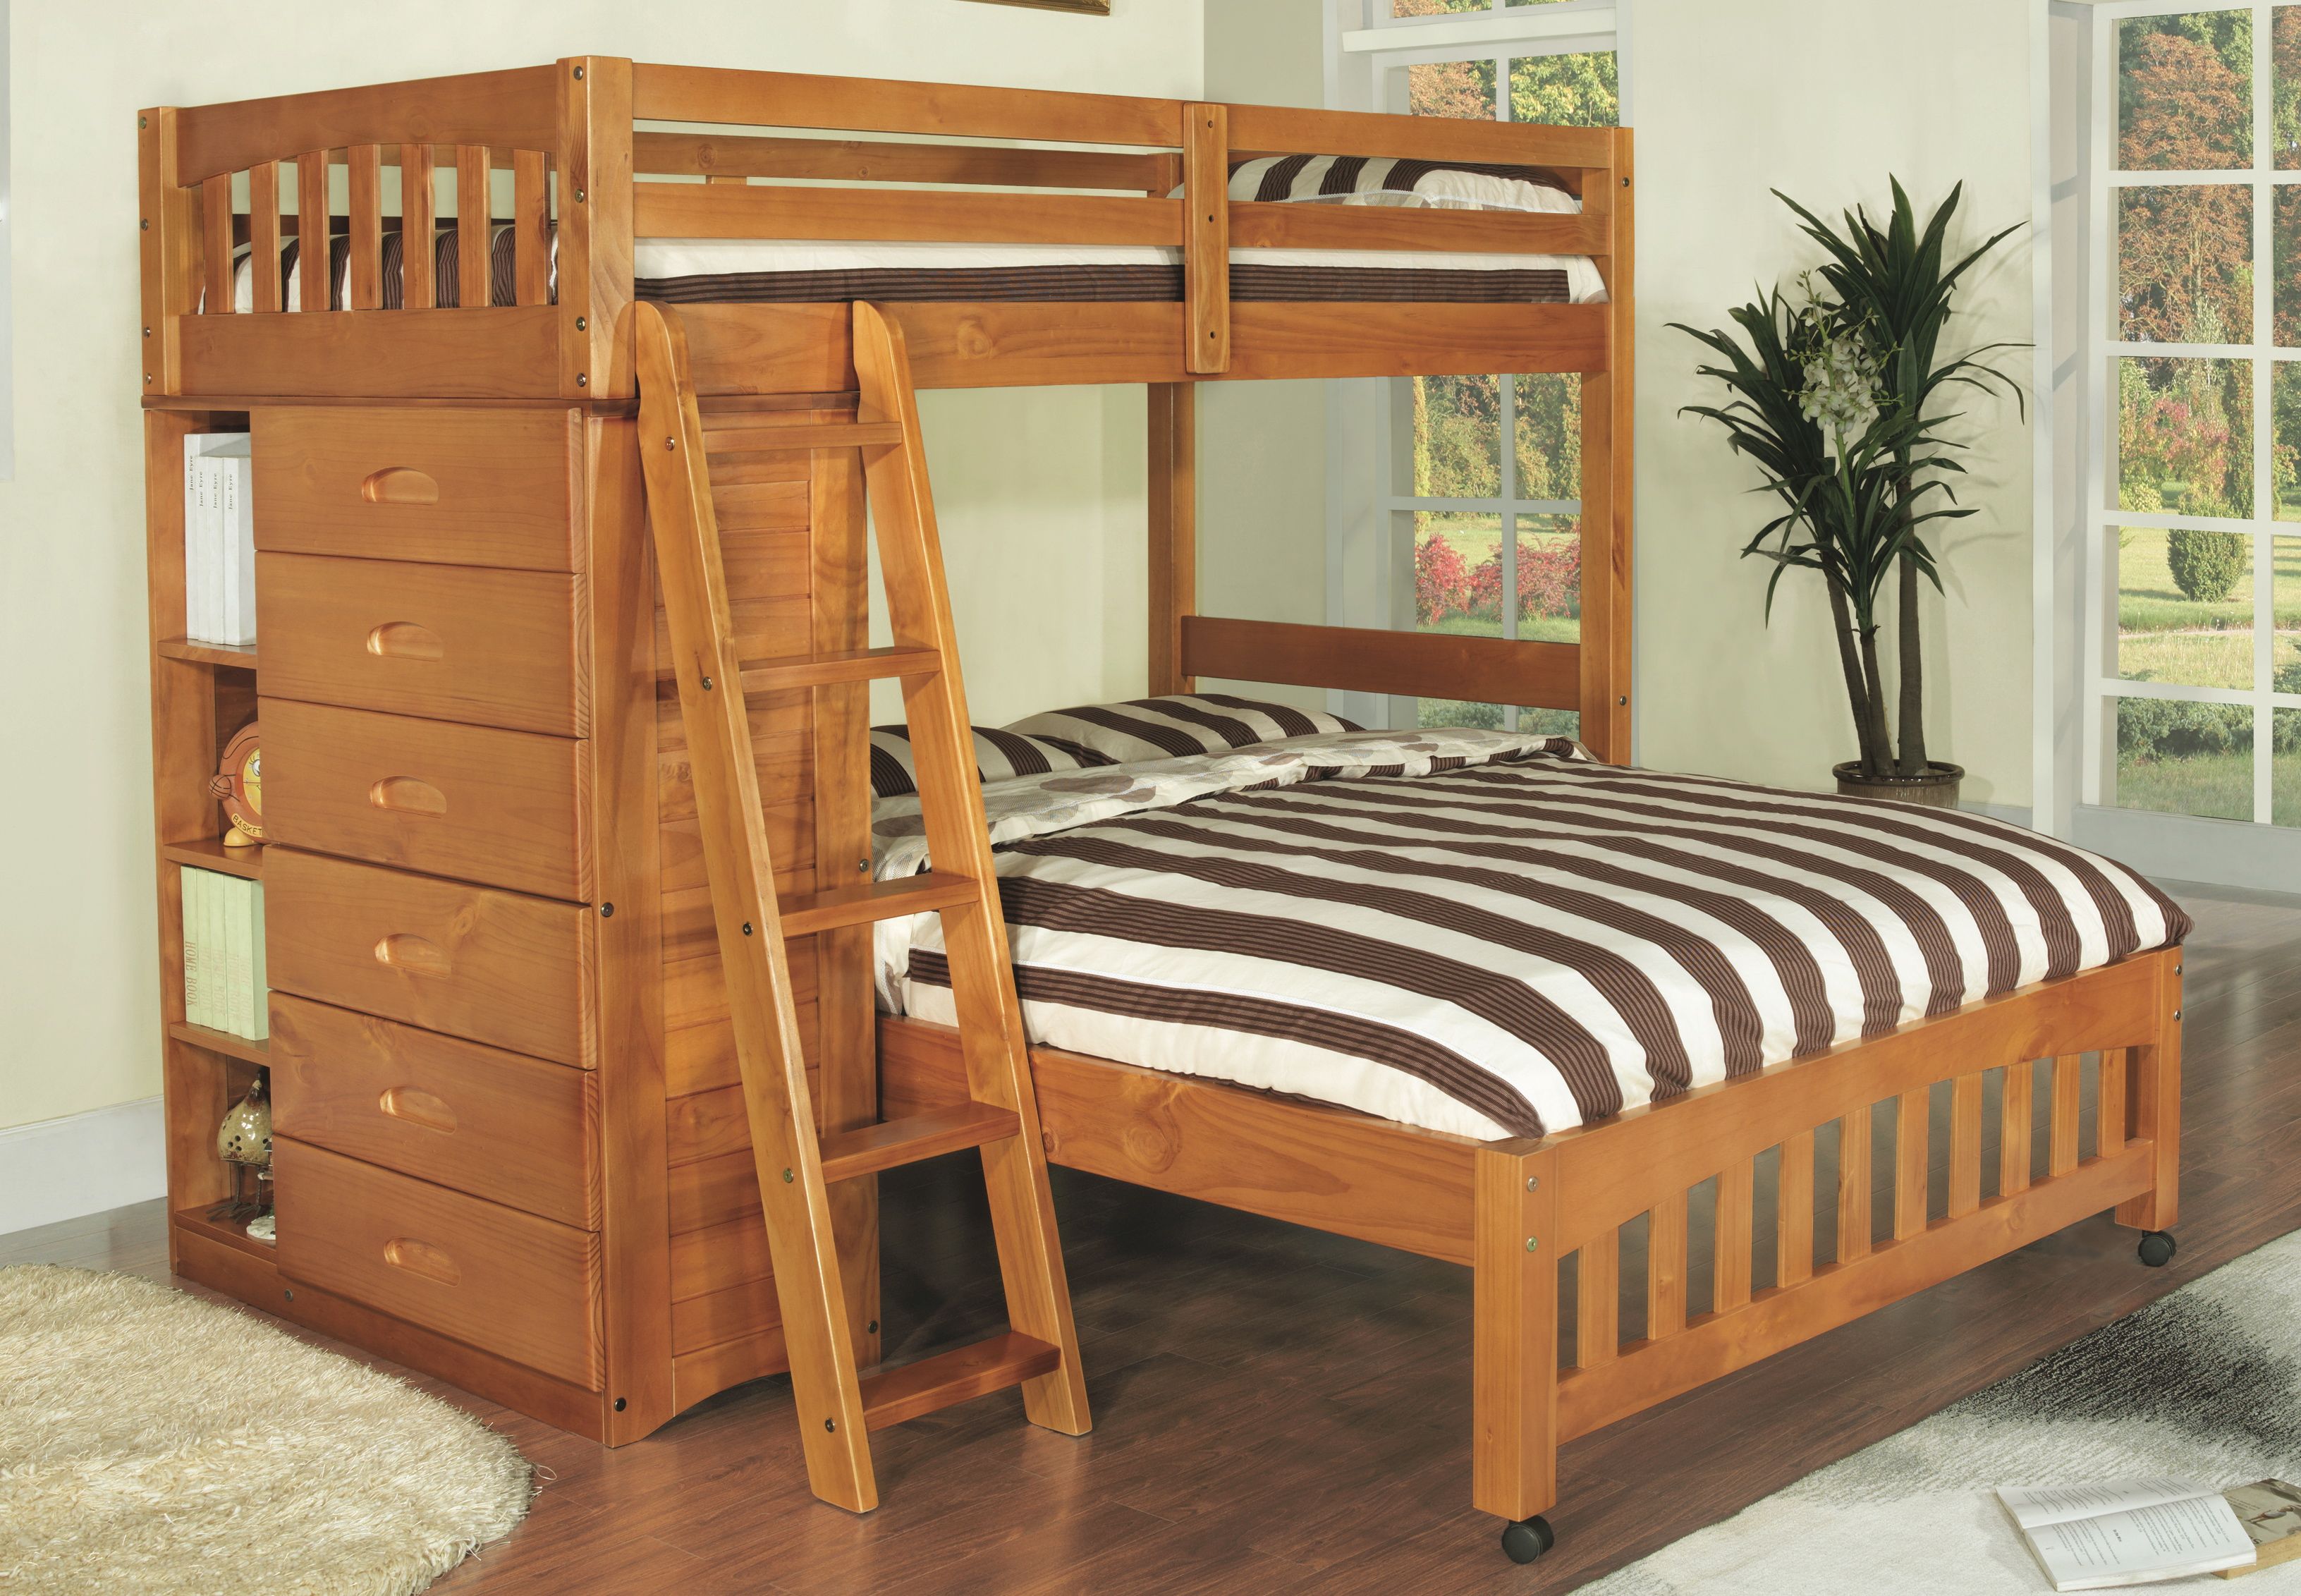 Honey Loft Bunk Beds, Modern Bunk Beds Twin Over Full